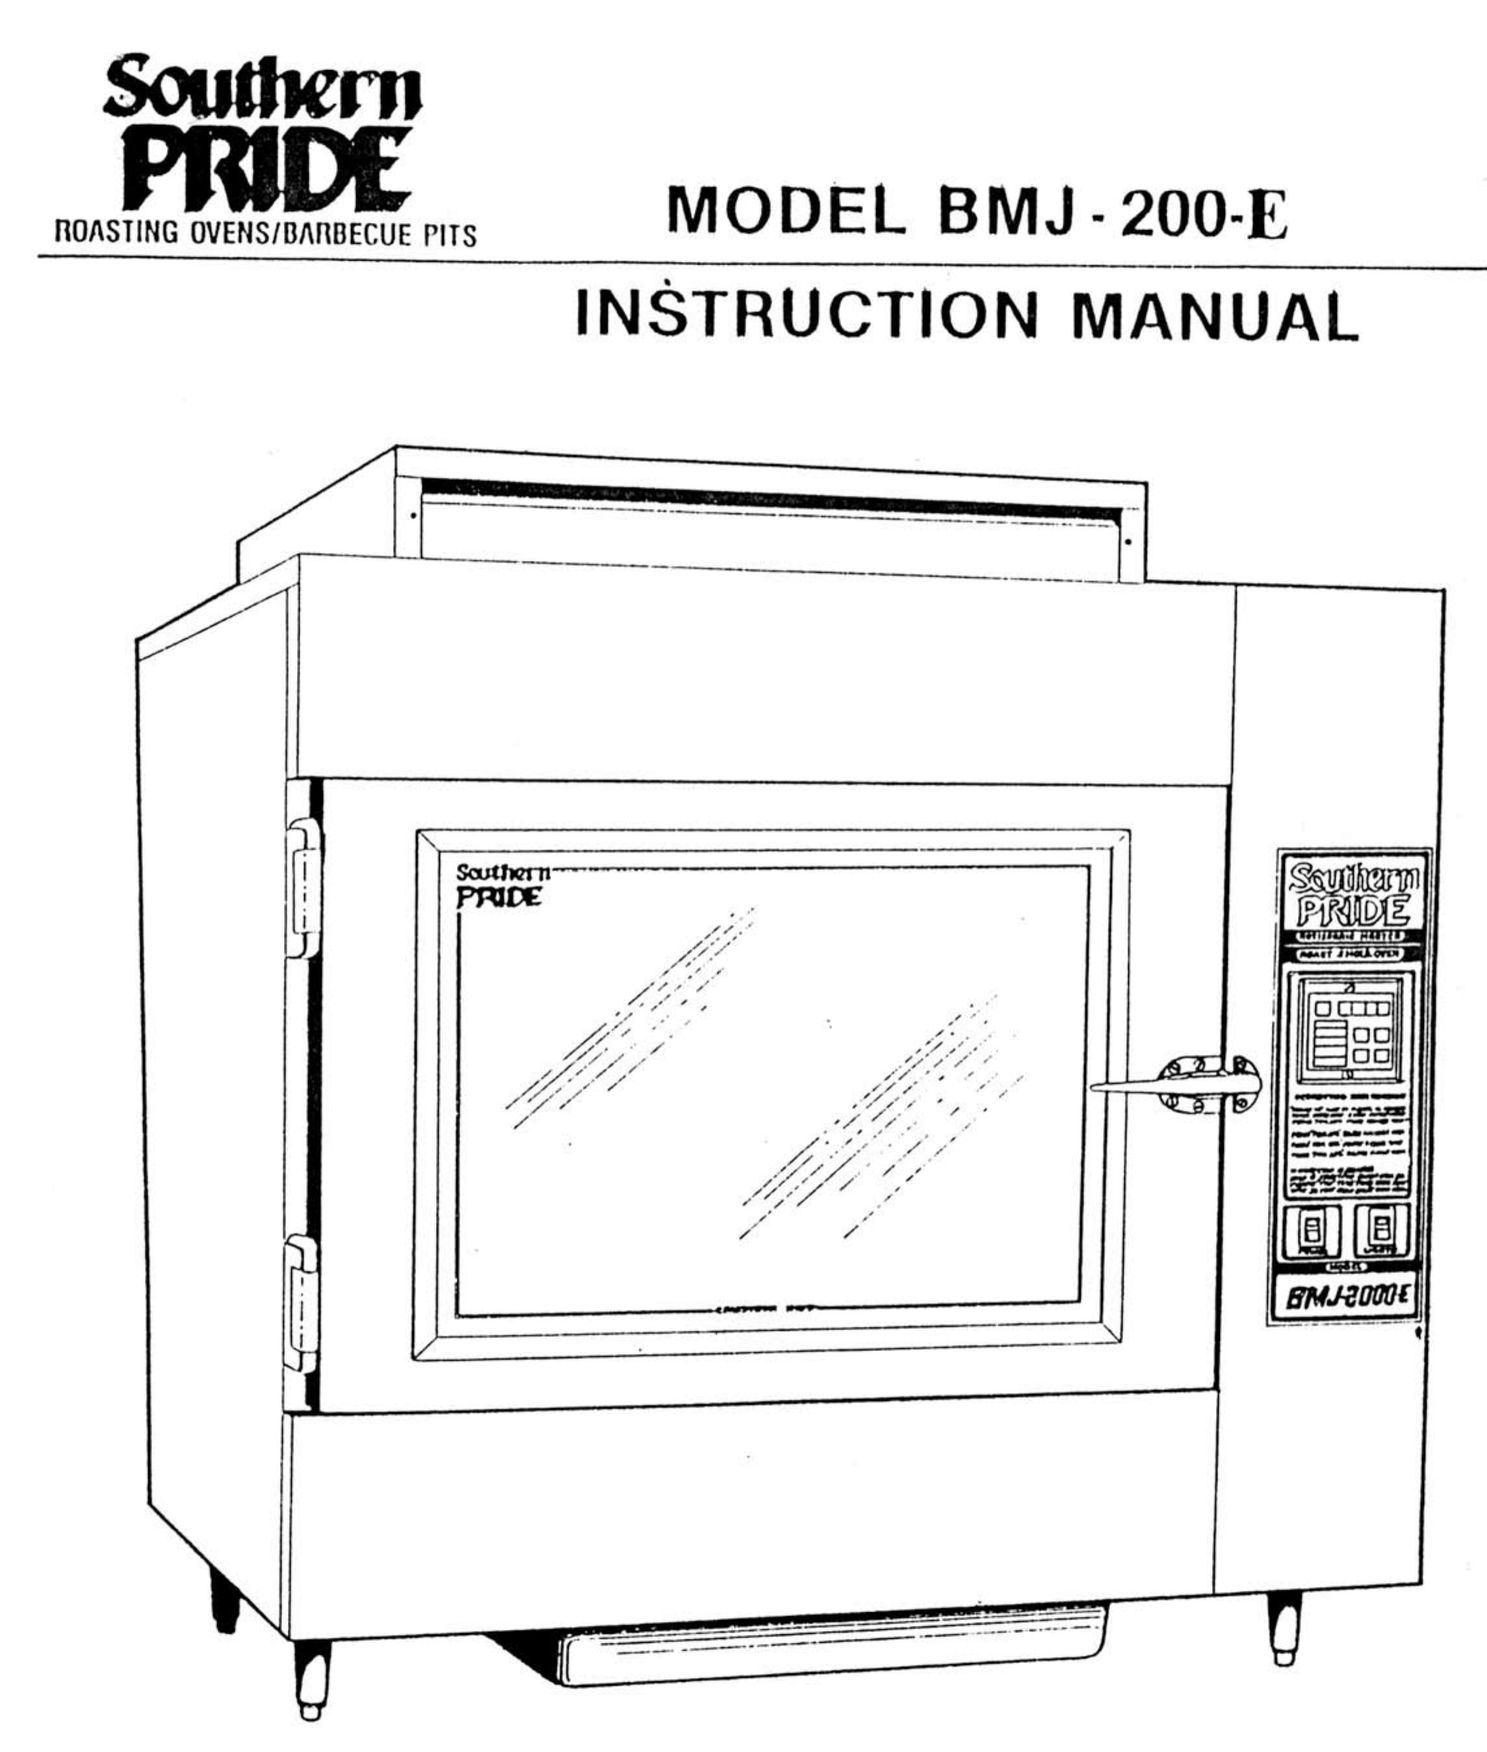 Southern Pride BMJ-200-E Oven User Manual